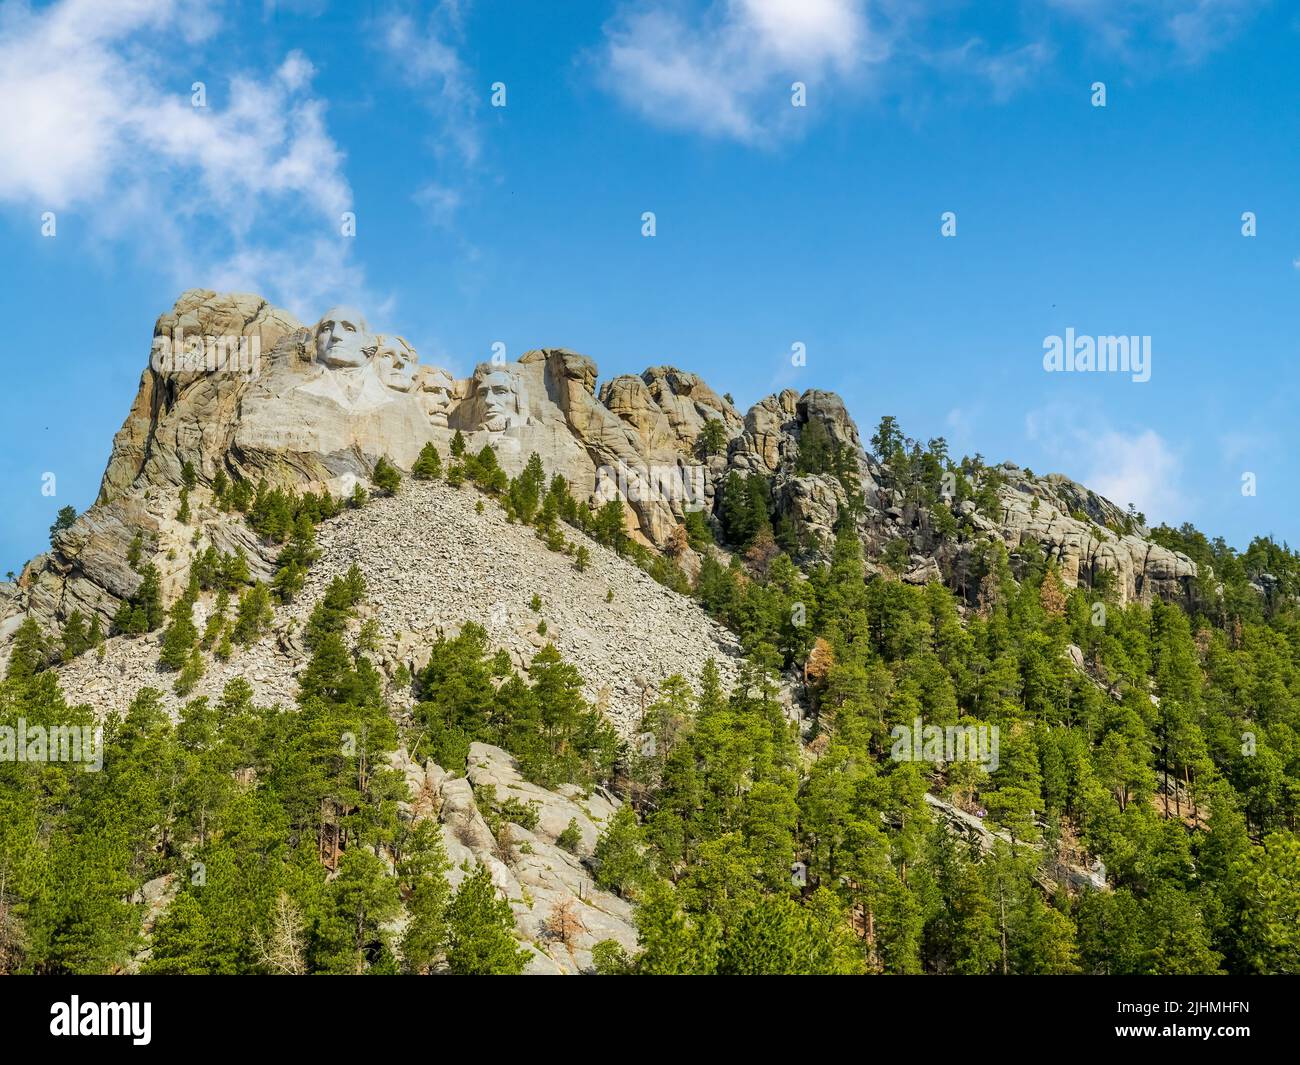 Mémorial national de Mount Rushmore dans les Black Hills du Dakota du Sud des États-Unis Banque D'Images